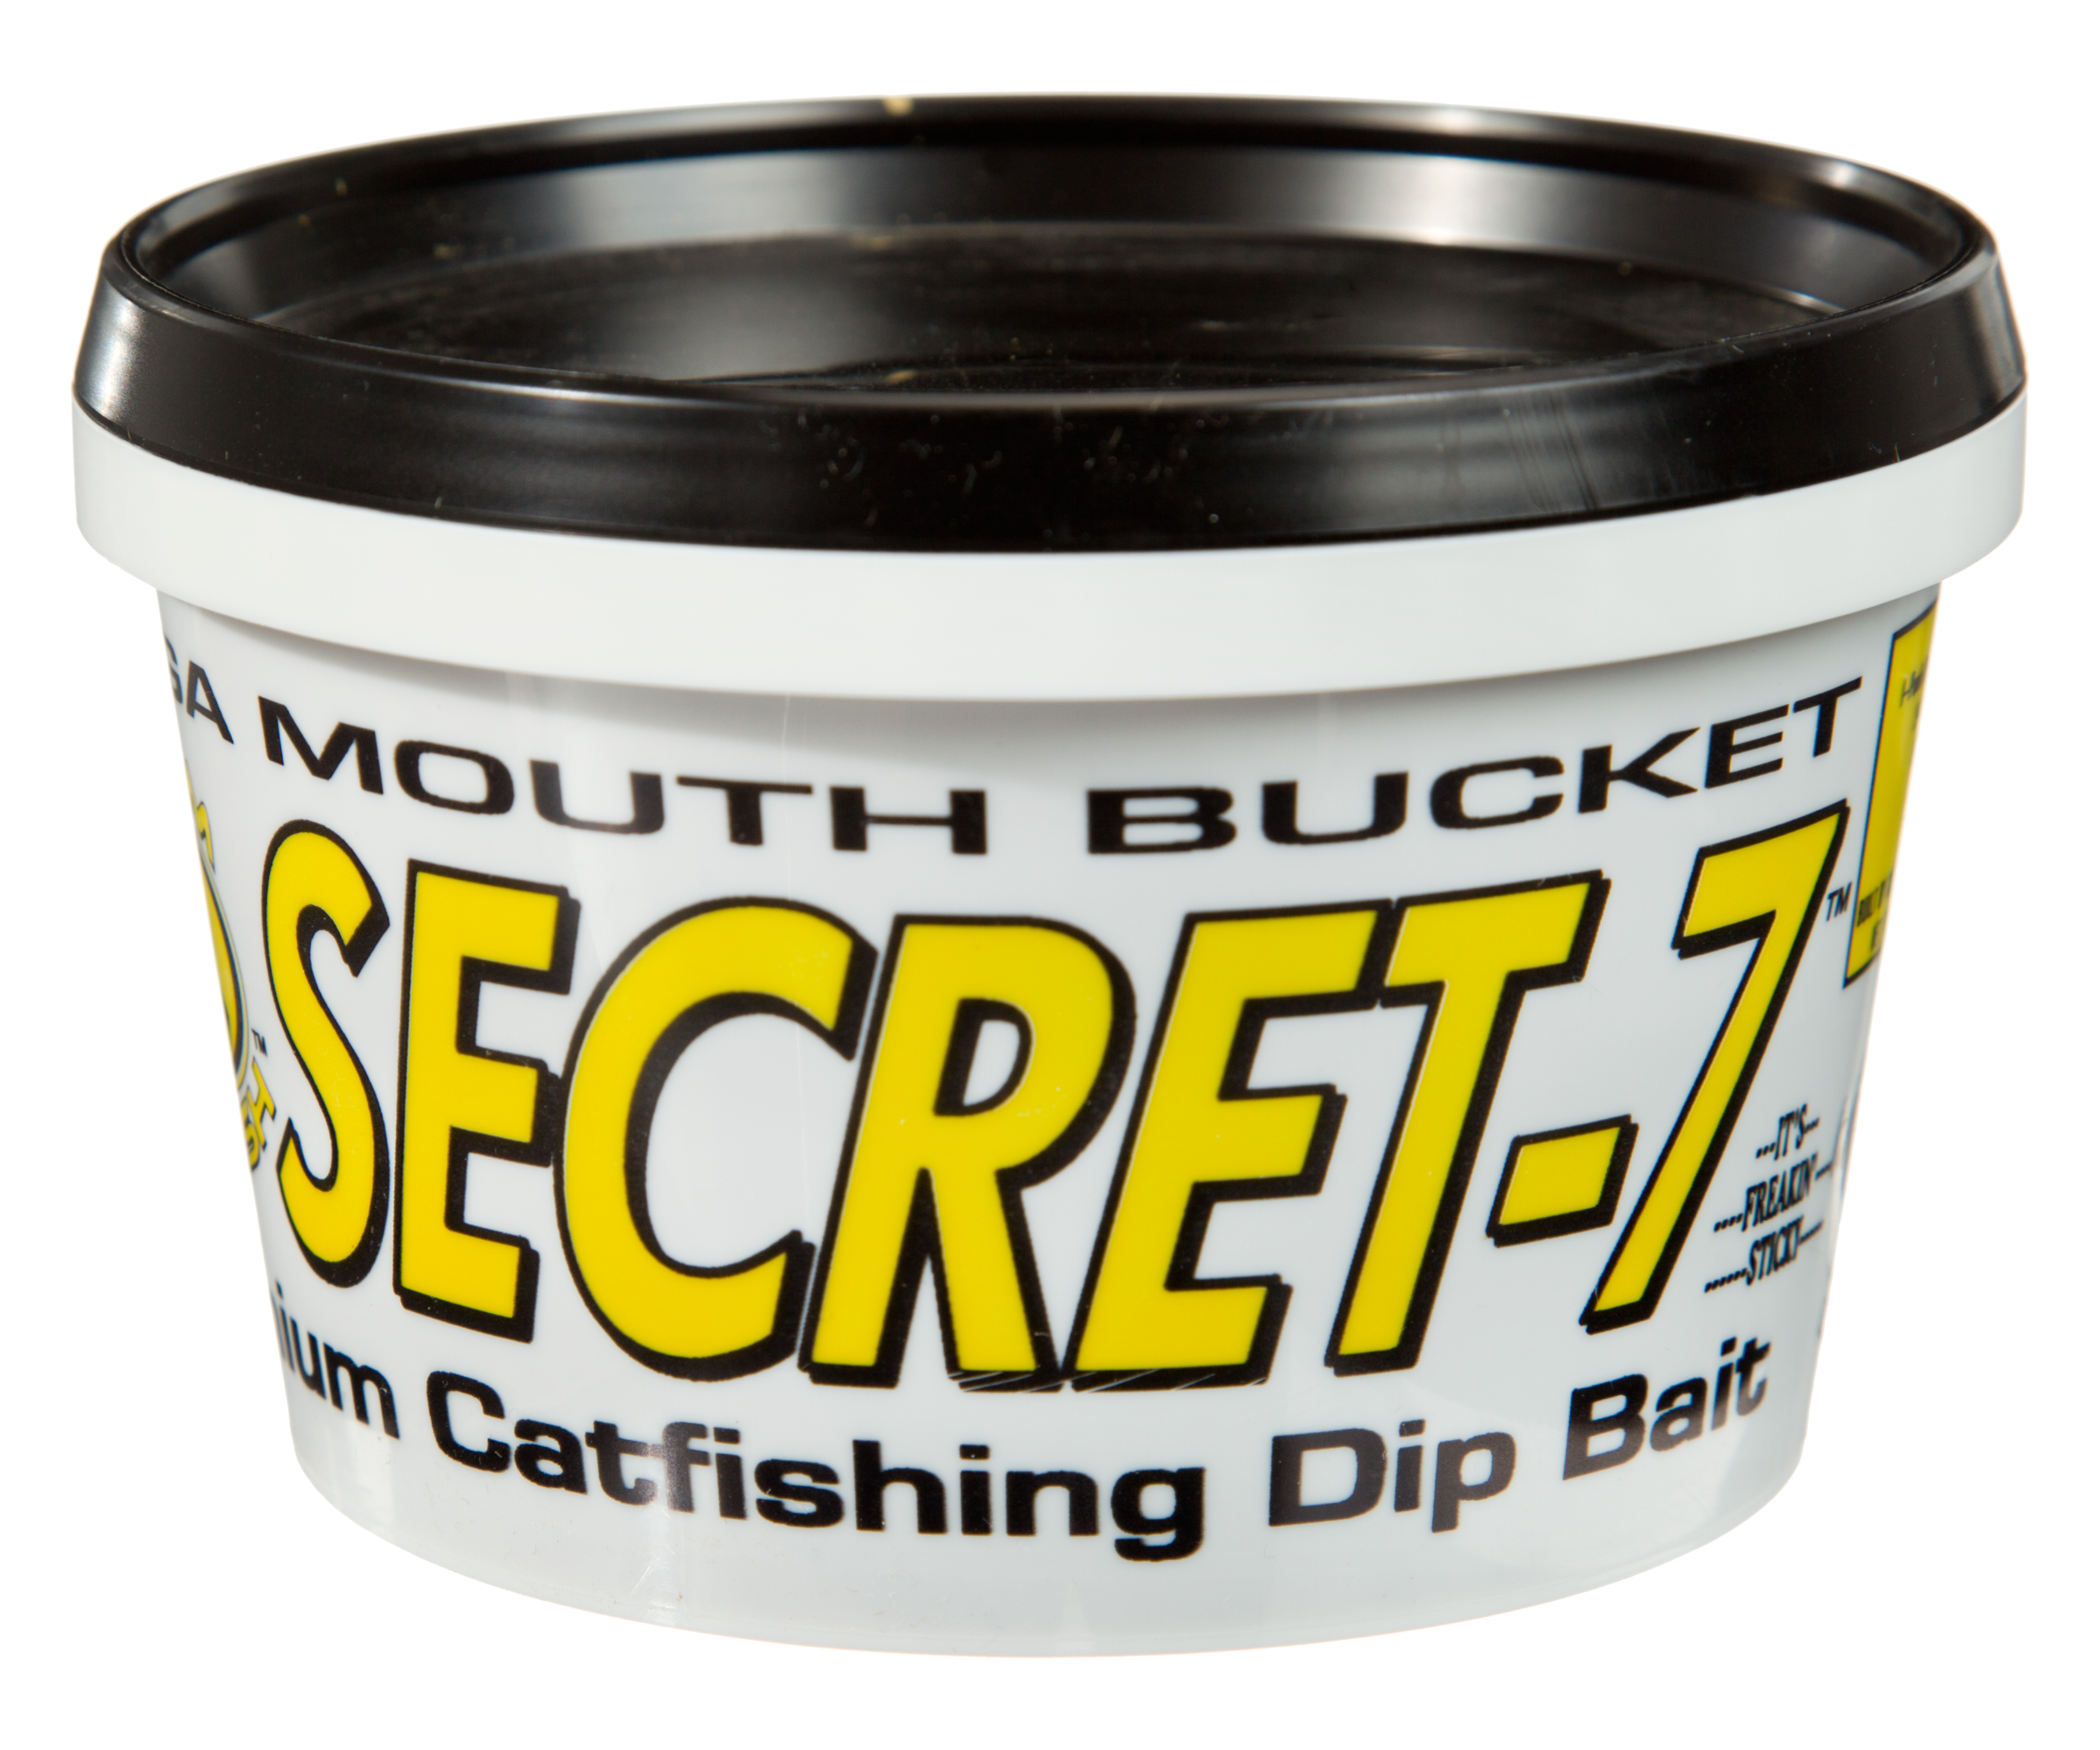 Team Catfish Secret-7 Premium Catfishing Dip Bait